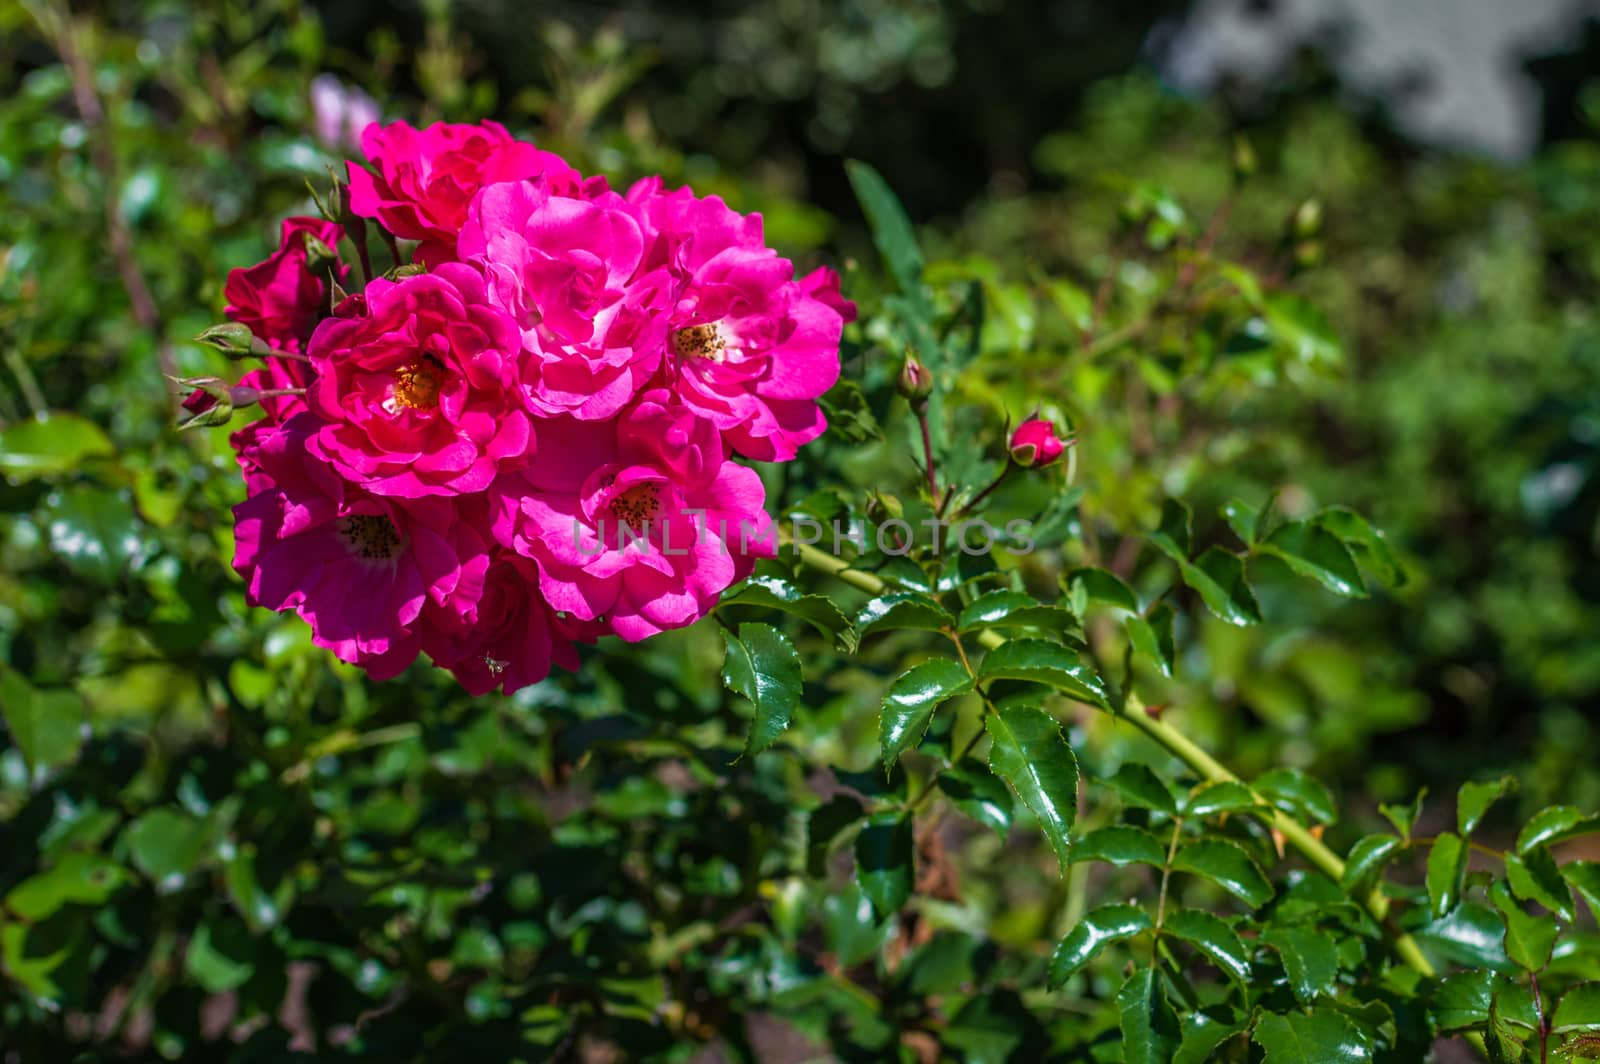 red roses in the garden by okskukuruza